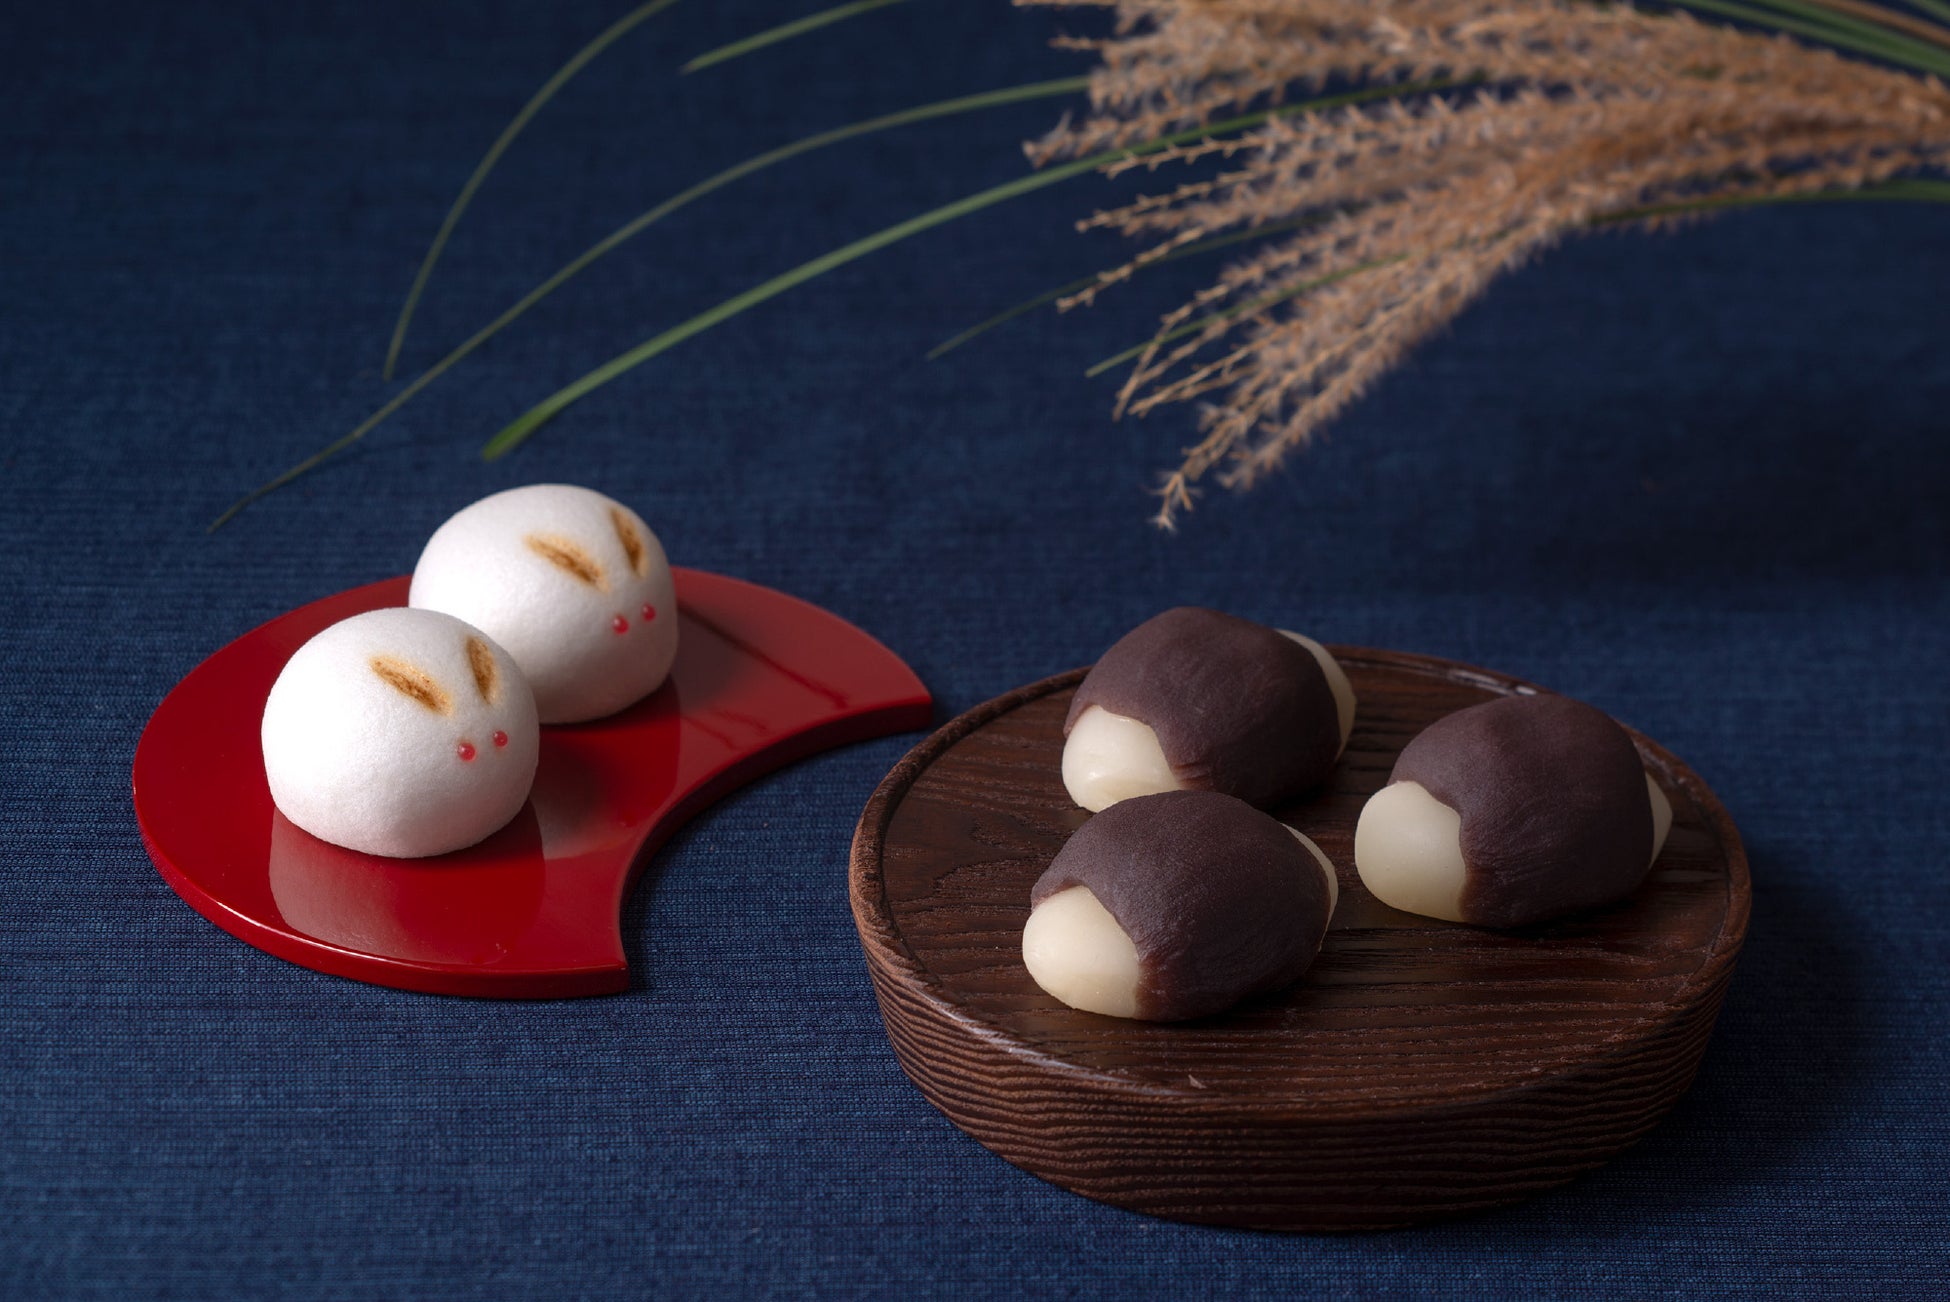 【中秋の名月】今年の十五夜も和菓子でほっこり。京菓子老舗の「お月見を楽しむ和菓子」をご紹介します。